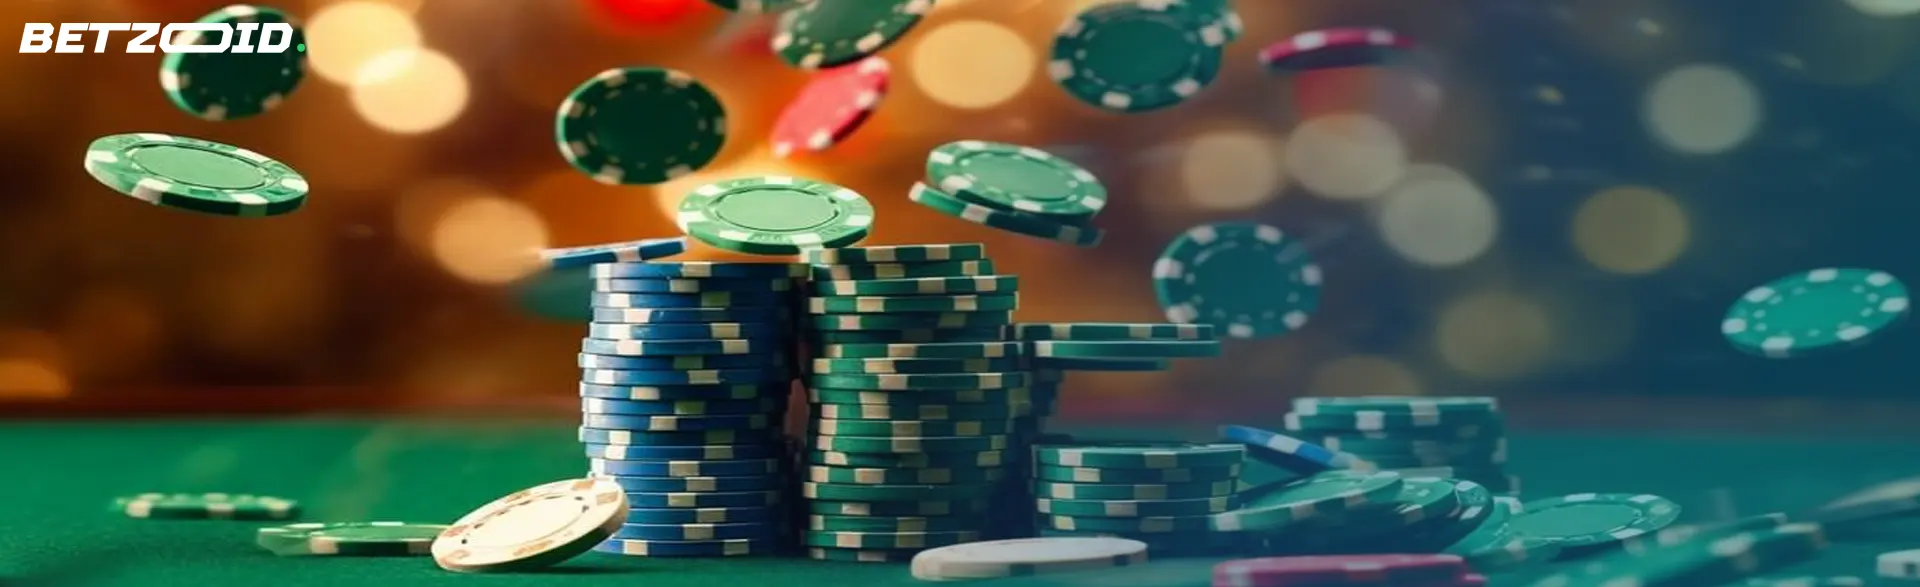 Fichas de casino volando sobre una mesa de juego, representativas de los casinos con apuestas bajas.